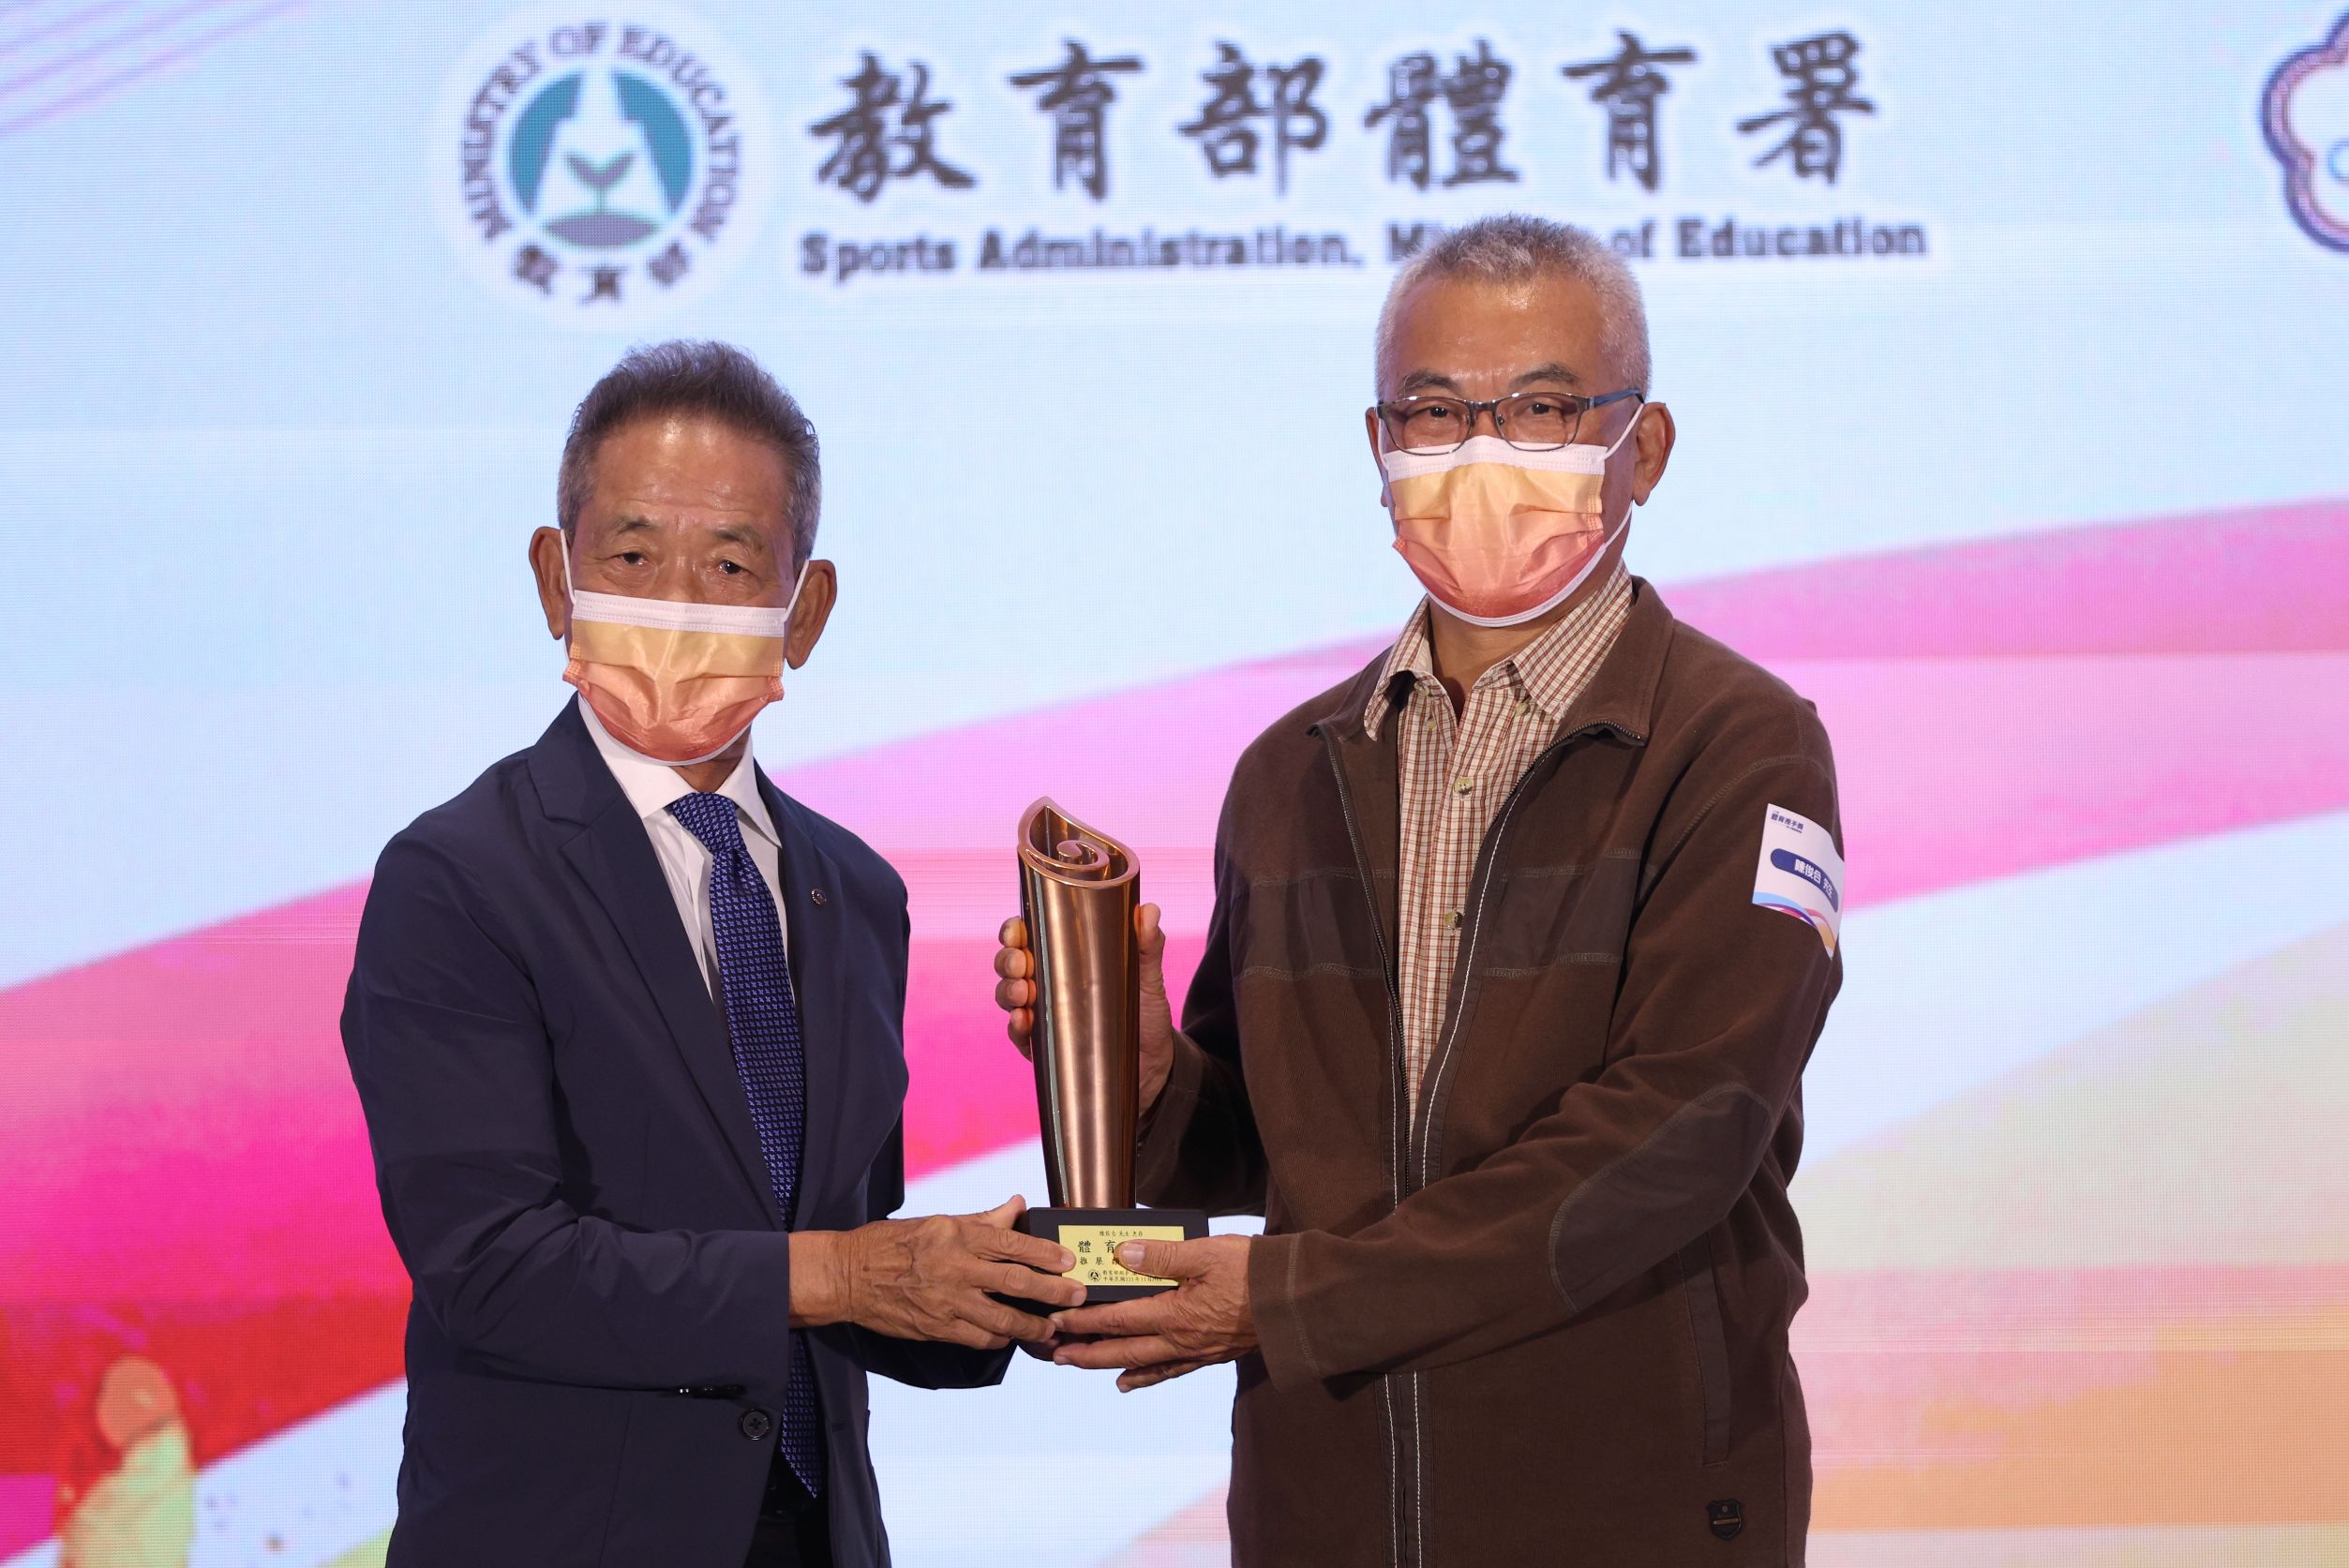 資深新聞工作者陳俊合(右)獲頒推展類銅質獎。李鴻明攝